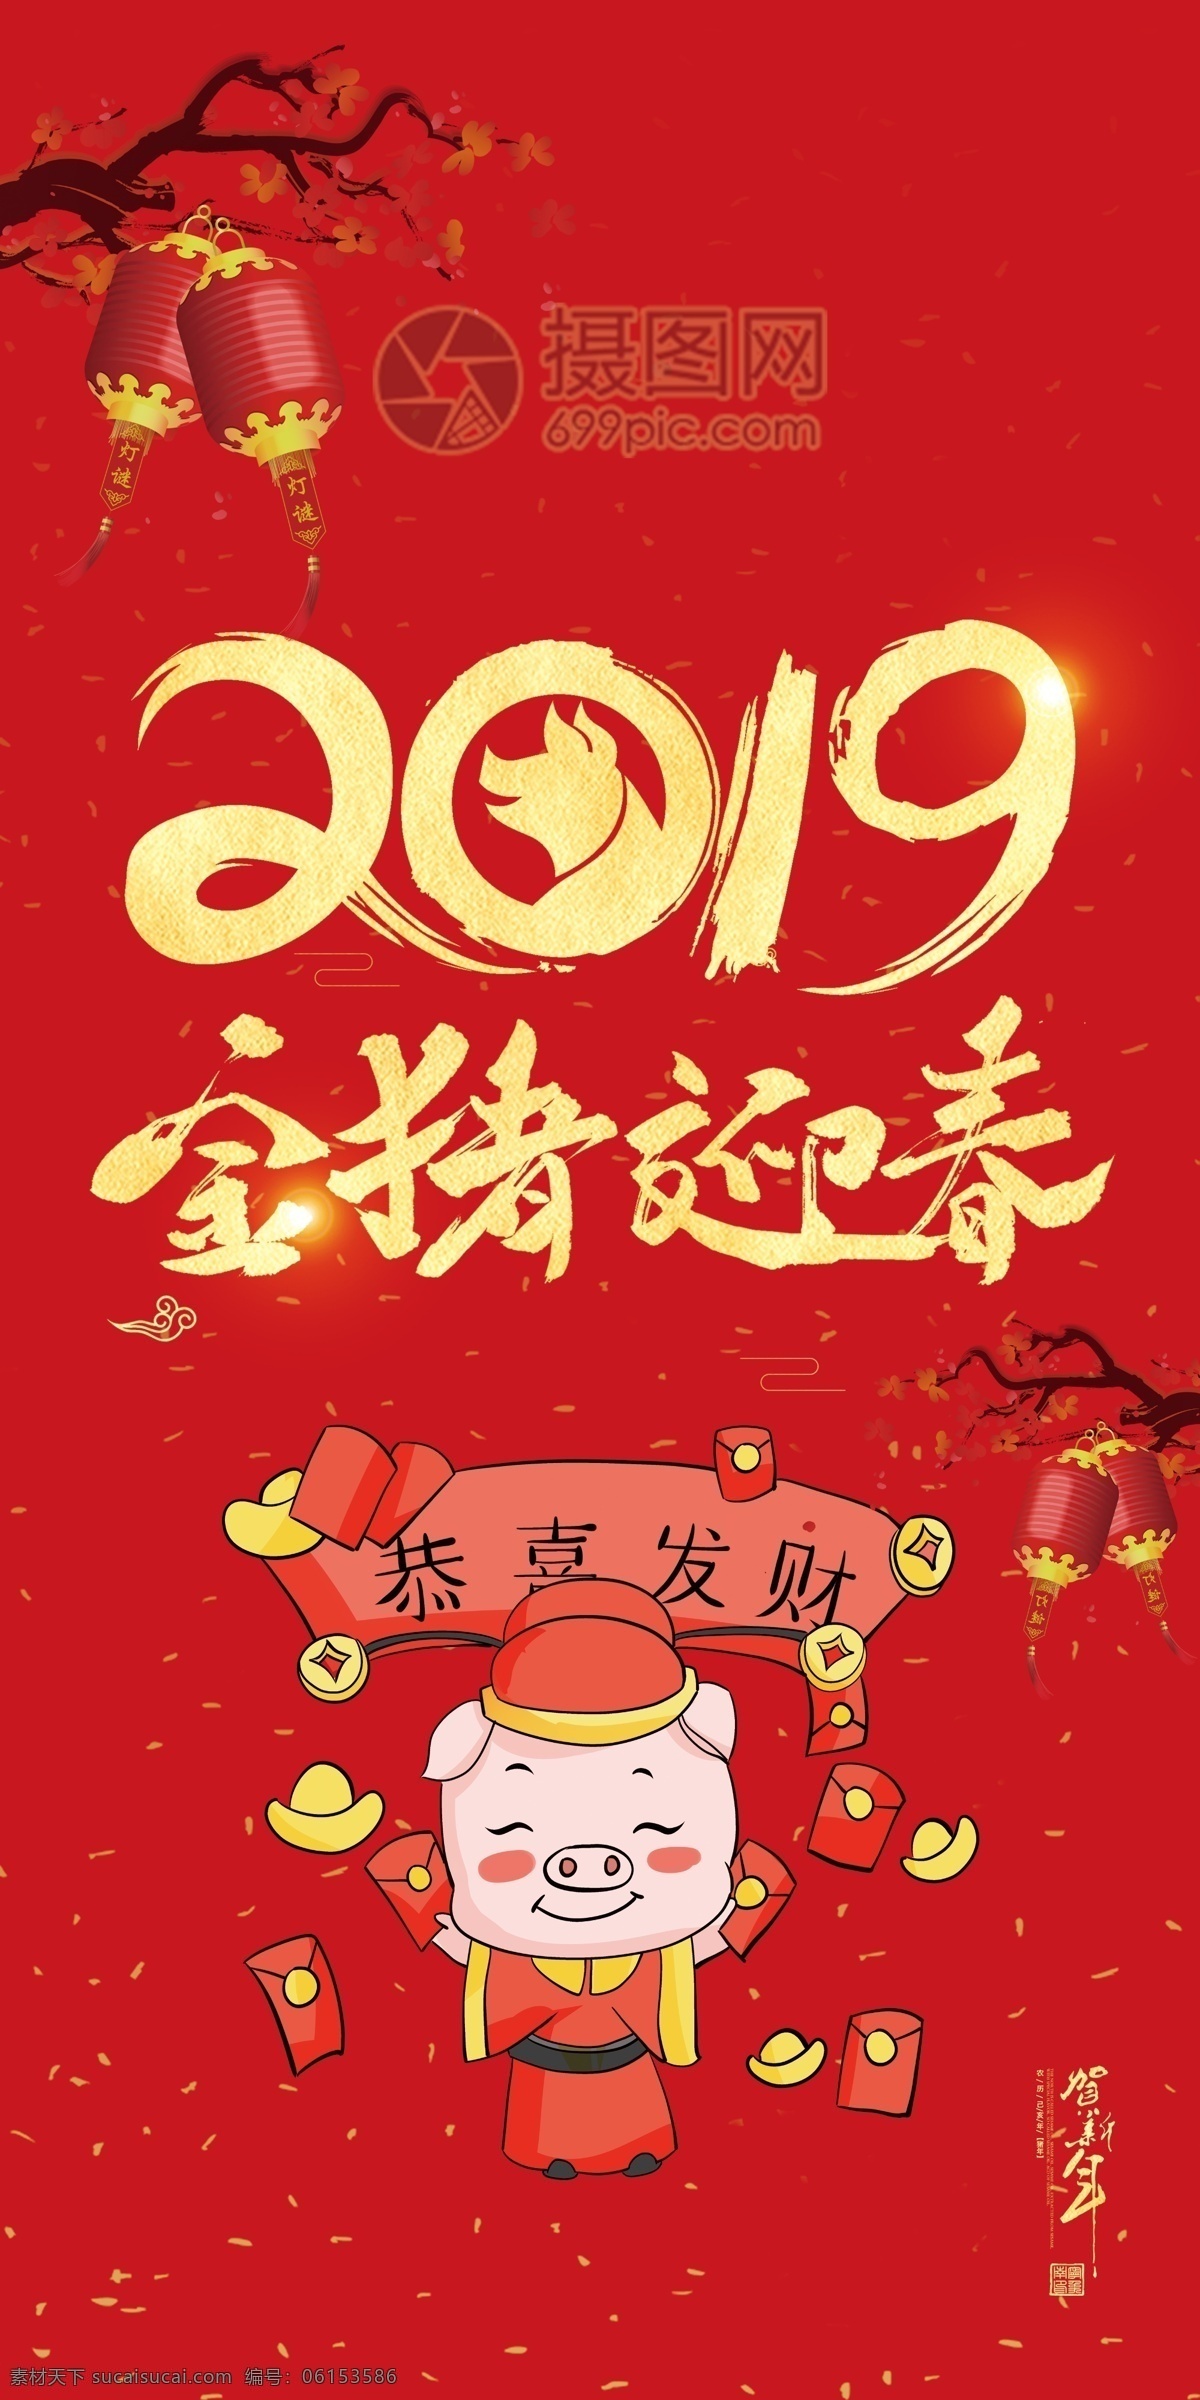 2019 中国 红 猪年 红包 新年红 新年 新春红包 猪年红包 红包素材 红包设计 金猪 2019猪年